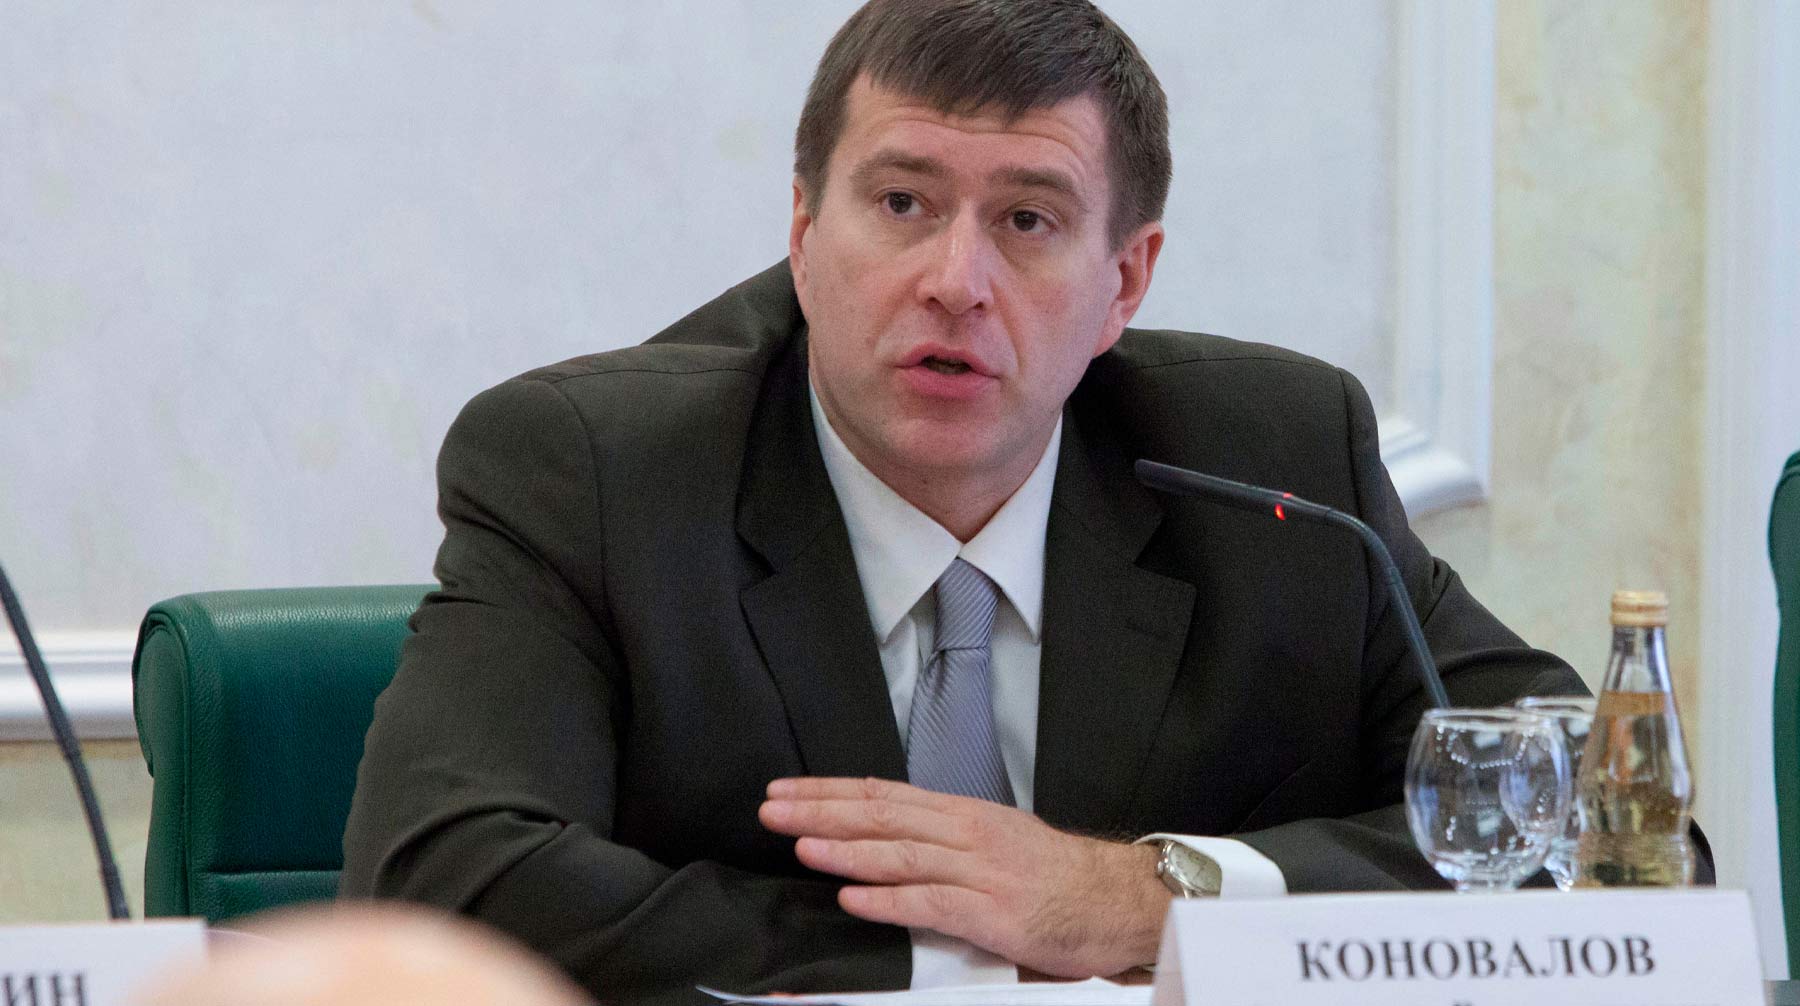 Занимавшего ранее пост полномочного представителя главы государства в КС Михаила Кротова освободили от должности Александр Коновалов